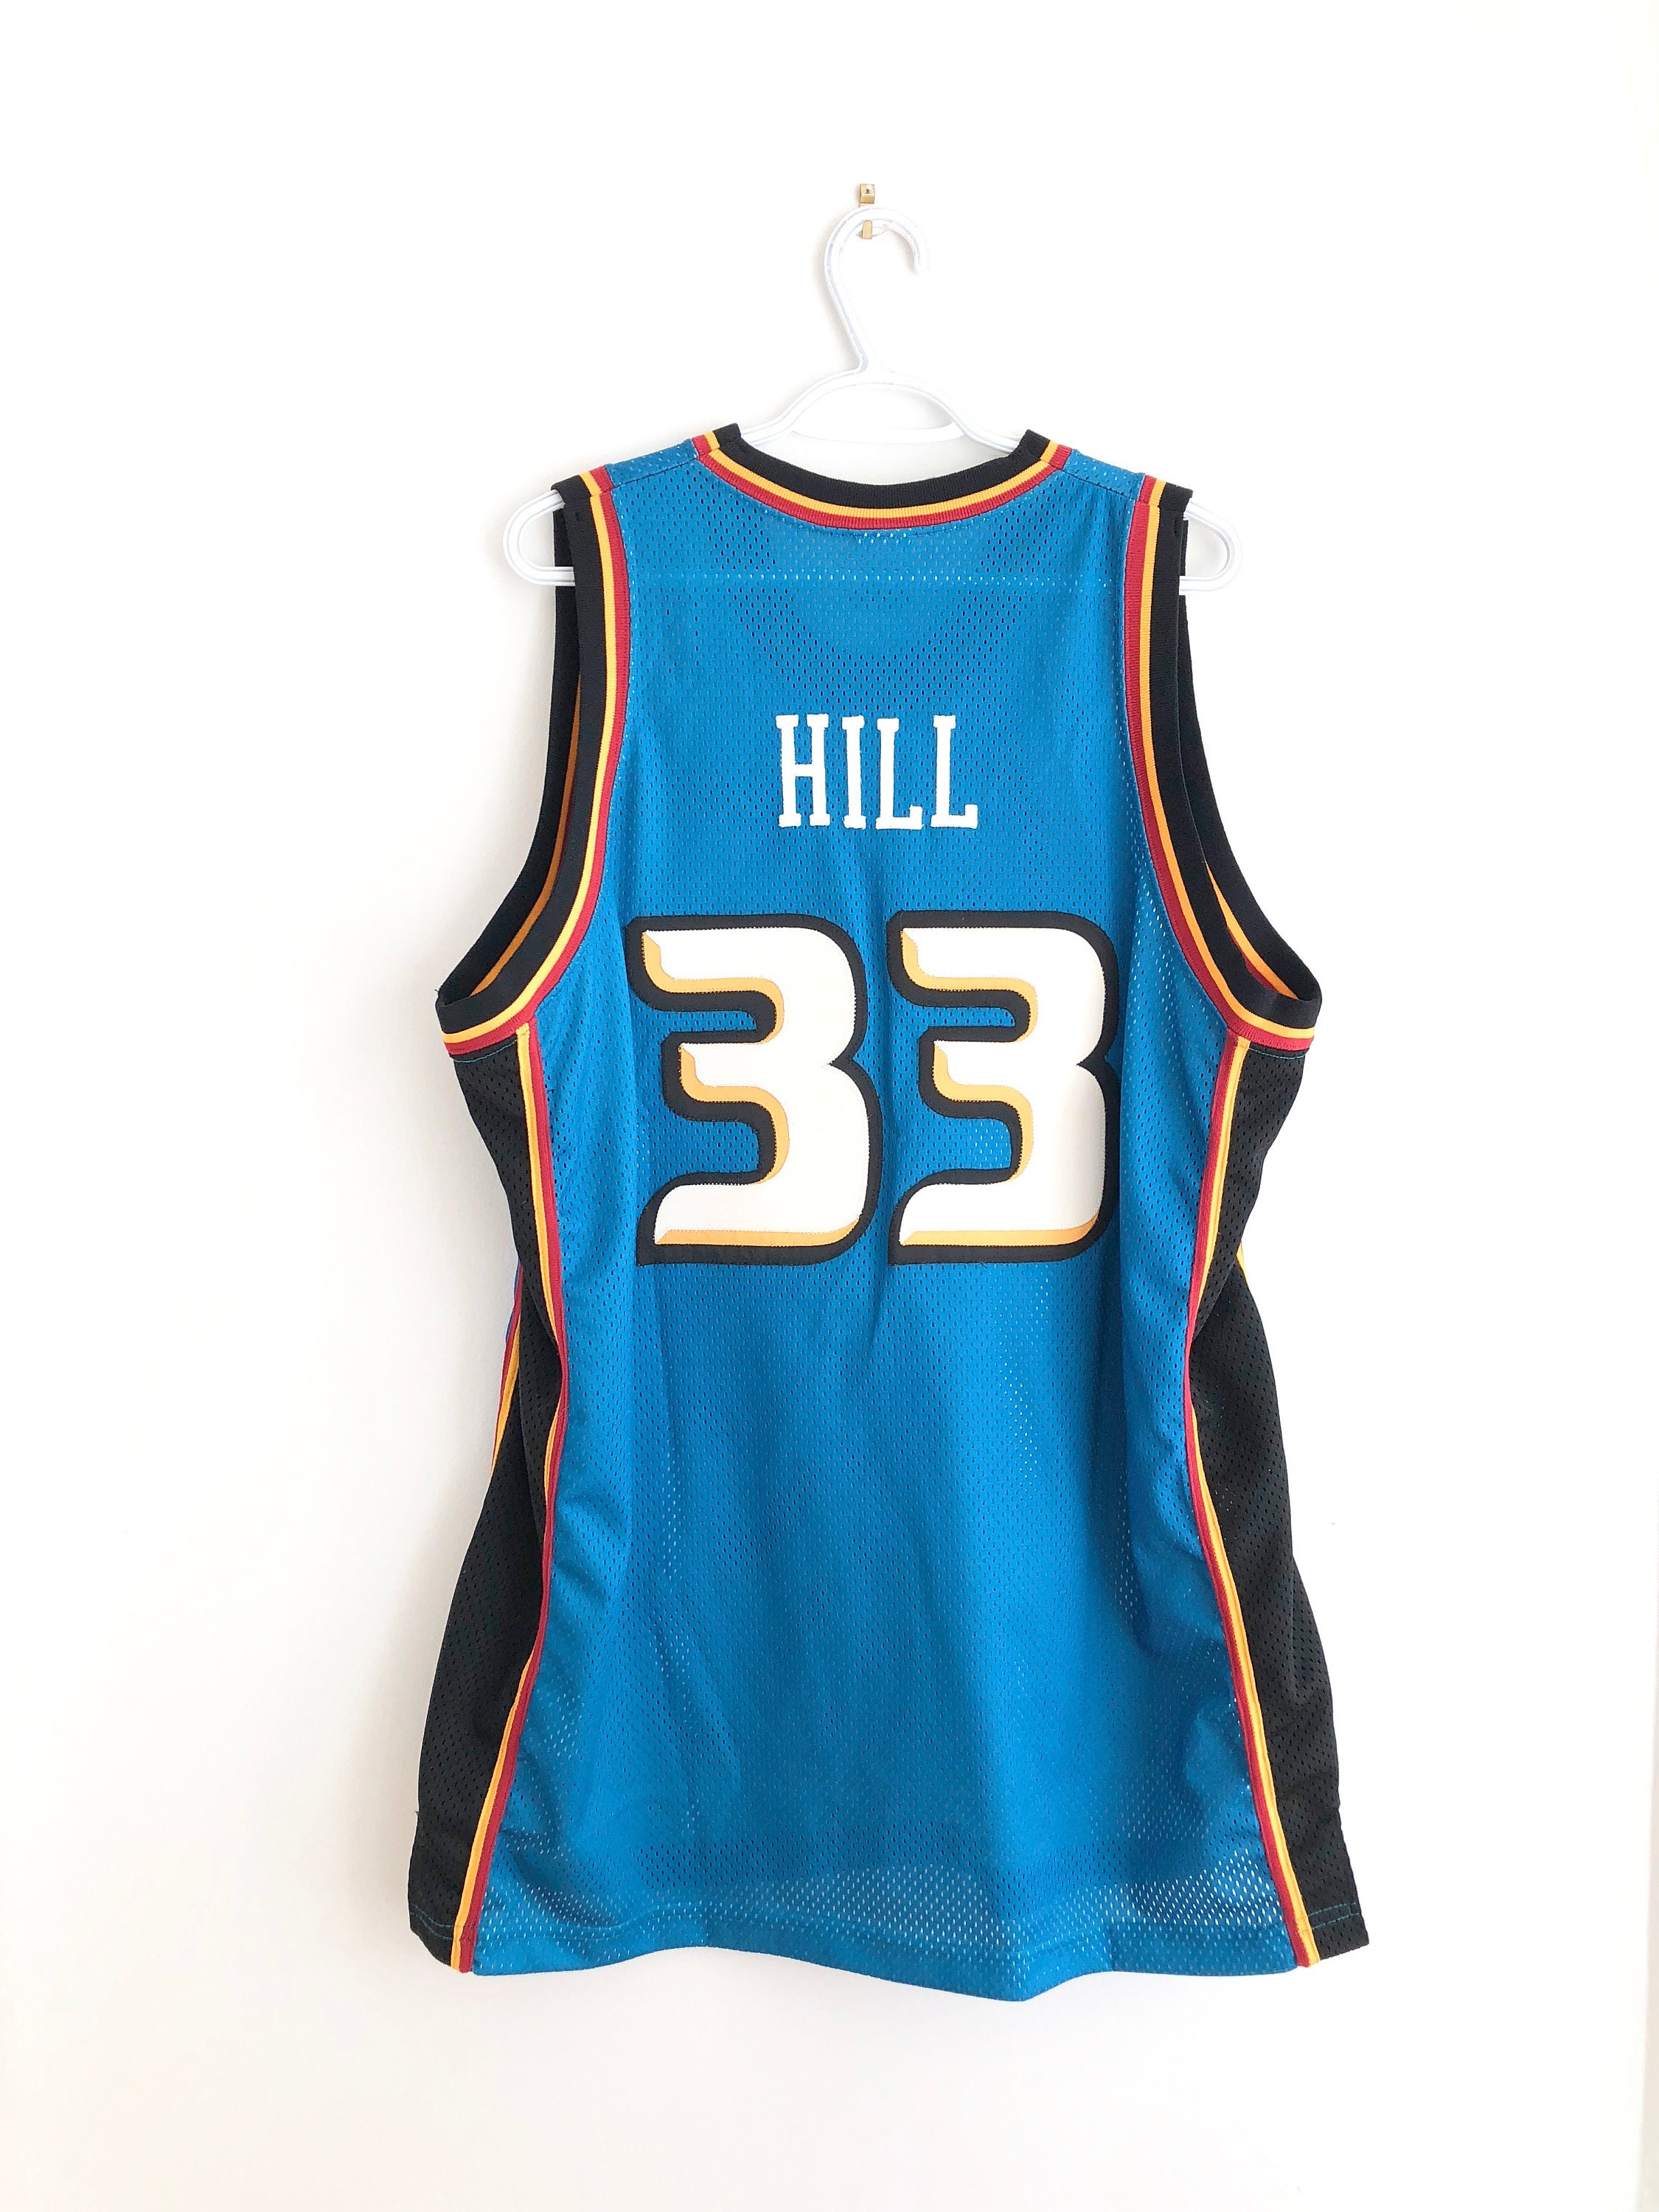 Grant Hill Duke Nike Jersey - ShopperBoard